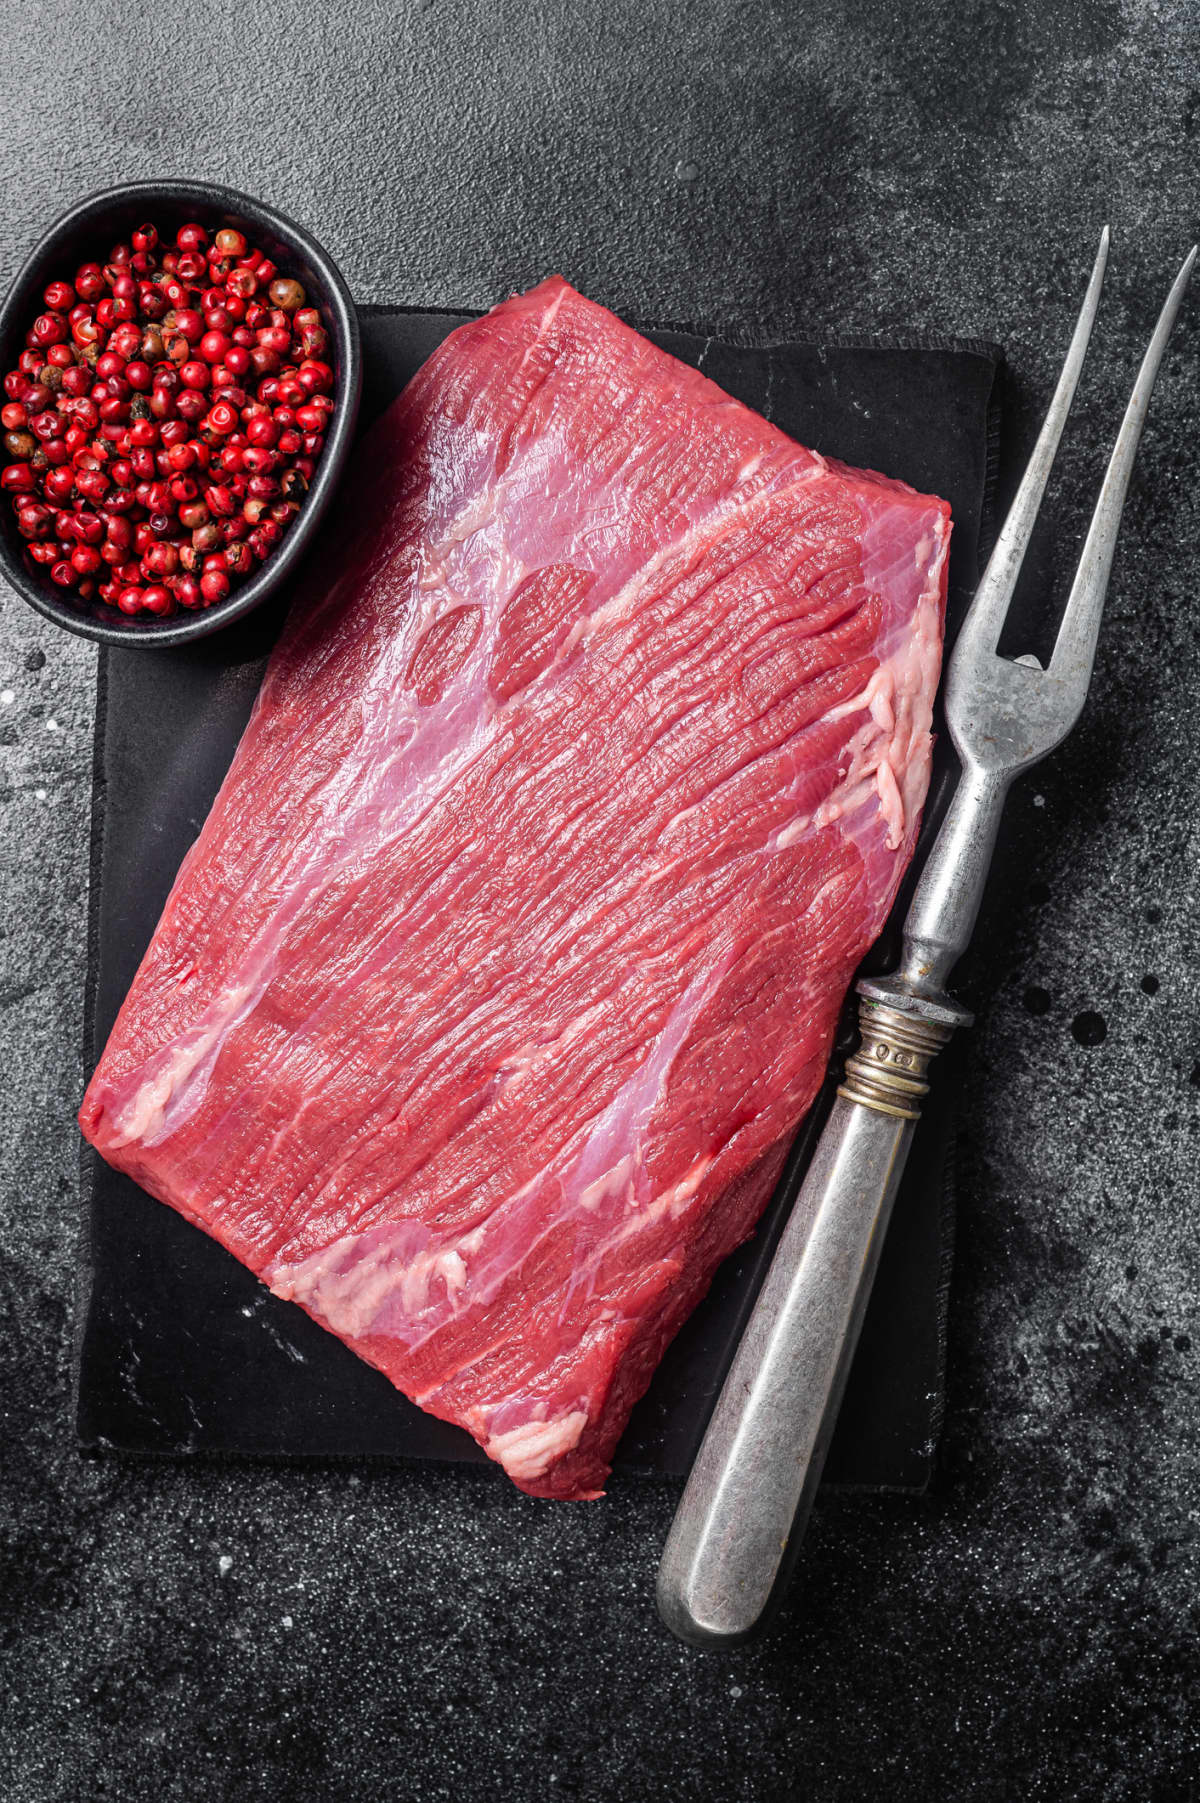 A raw flank steak on a cutting board